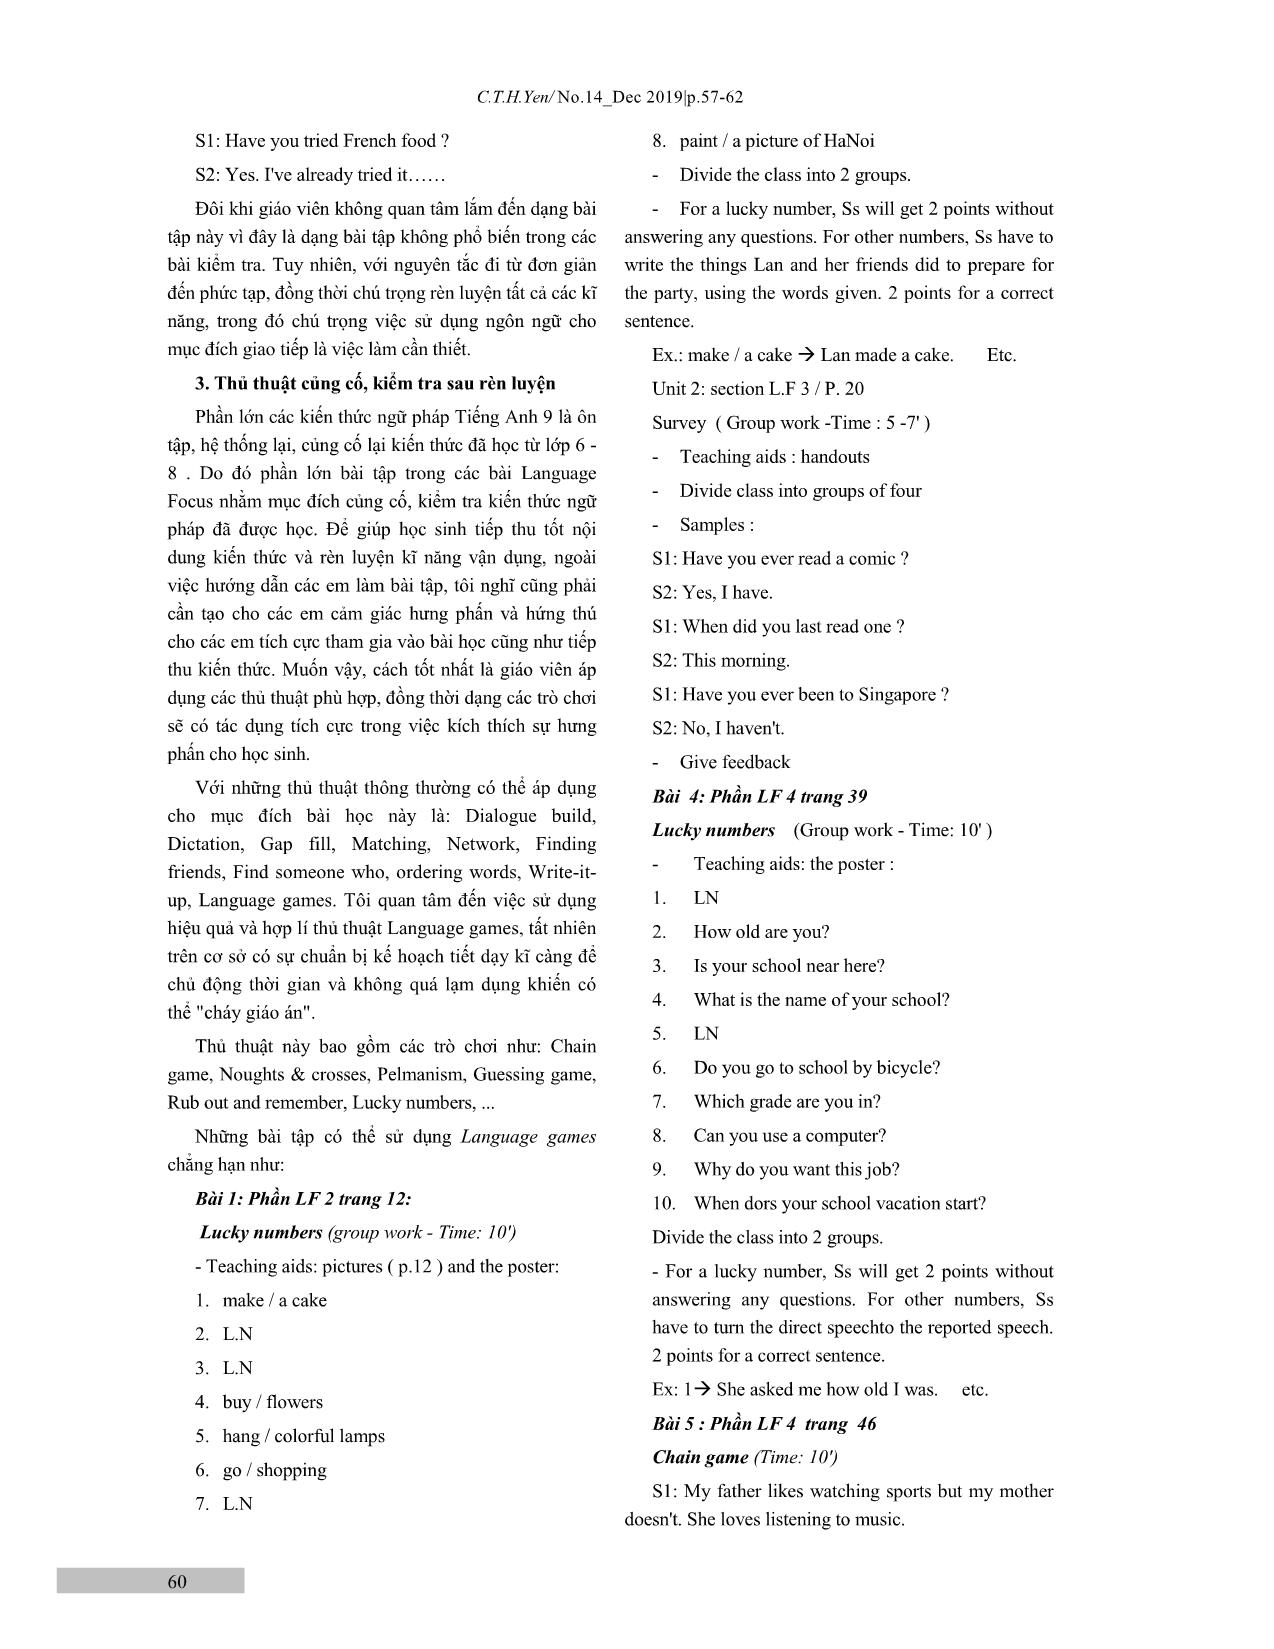 Một số thủ thuật dạy phần Language Focus trong sách Tiếng Anh lớp 9 trang 4